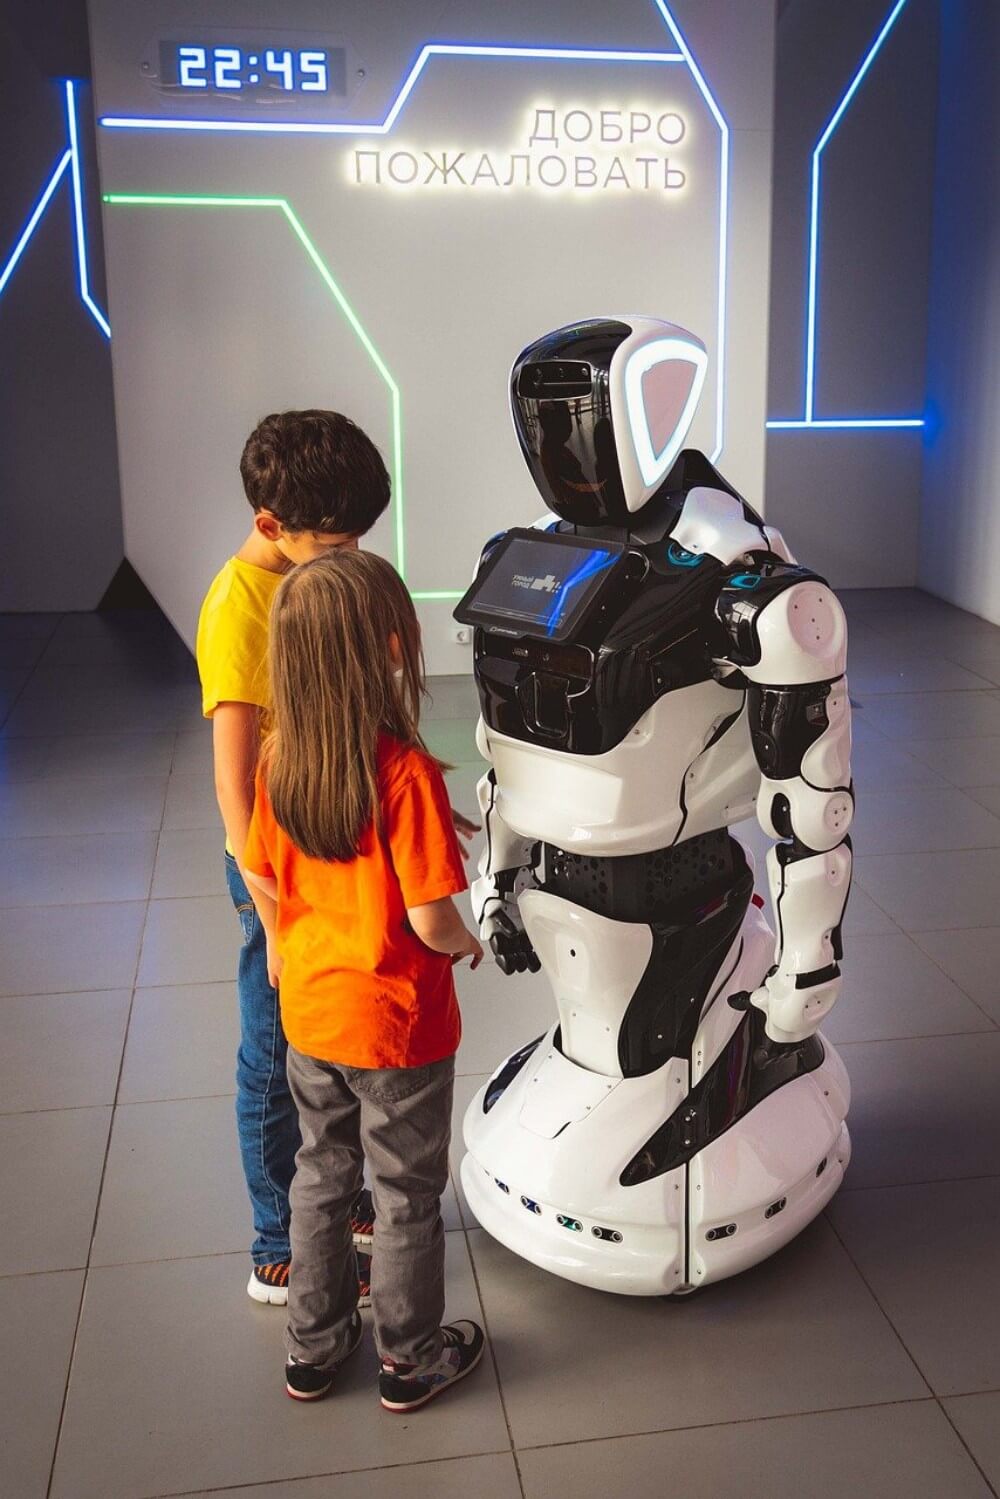 Музей Робототехники в ВДНХ, Москва с ребенком